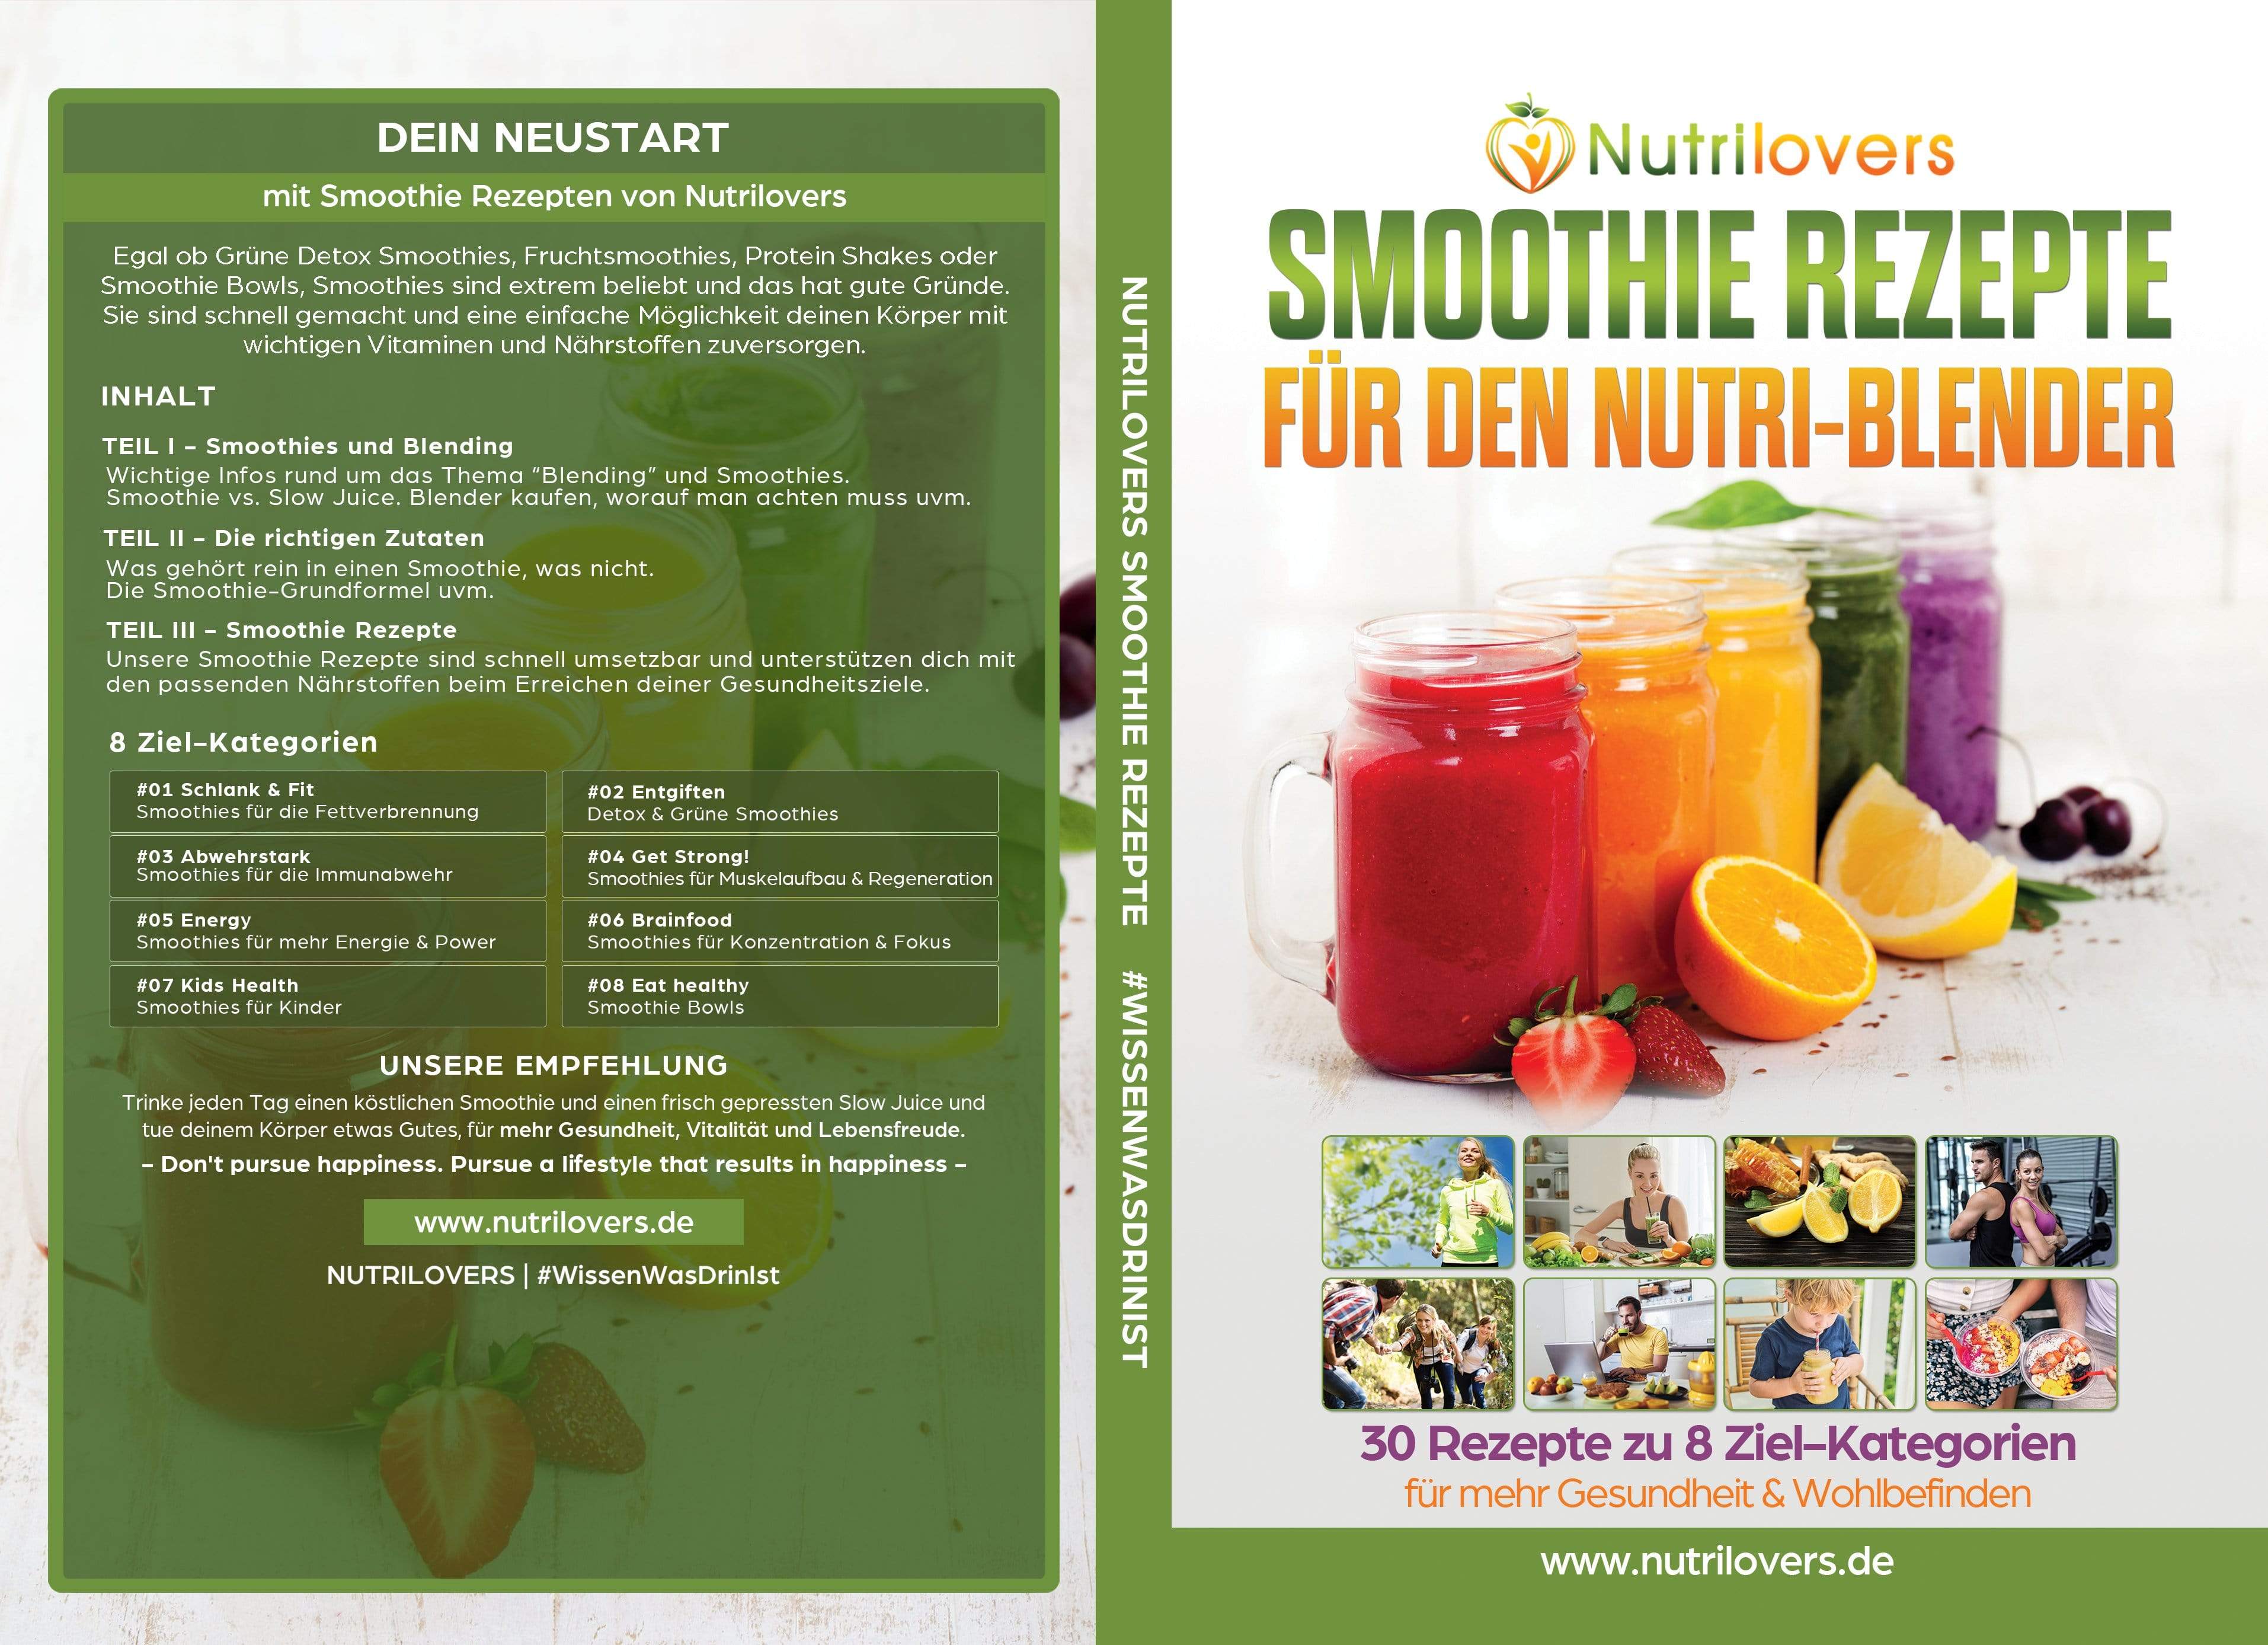 NUTRILOVERS | #WissenWasDrinIst SMOOTHIE Rezeptbuch von Nutrilovers: 30 Rezepte zu 8-Zielkategorien kuechengeraete haushaltsgeraete WissenWasDrinIst